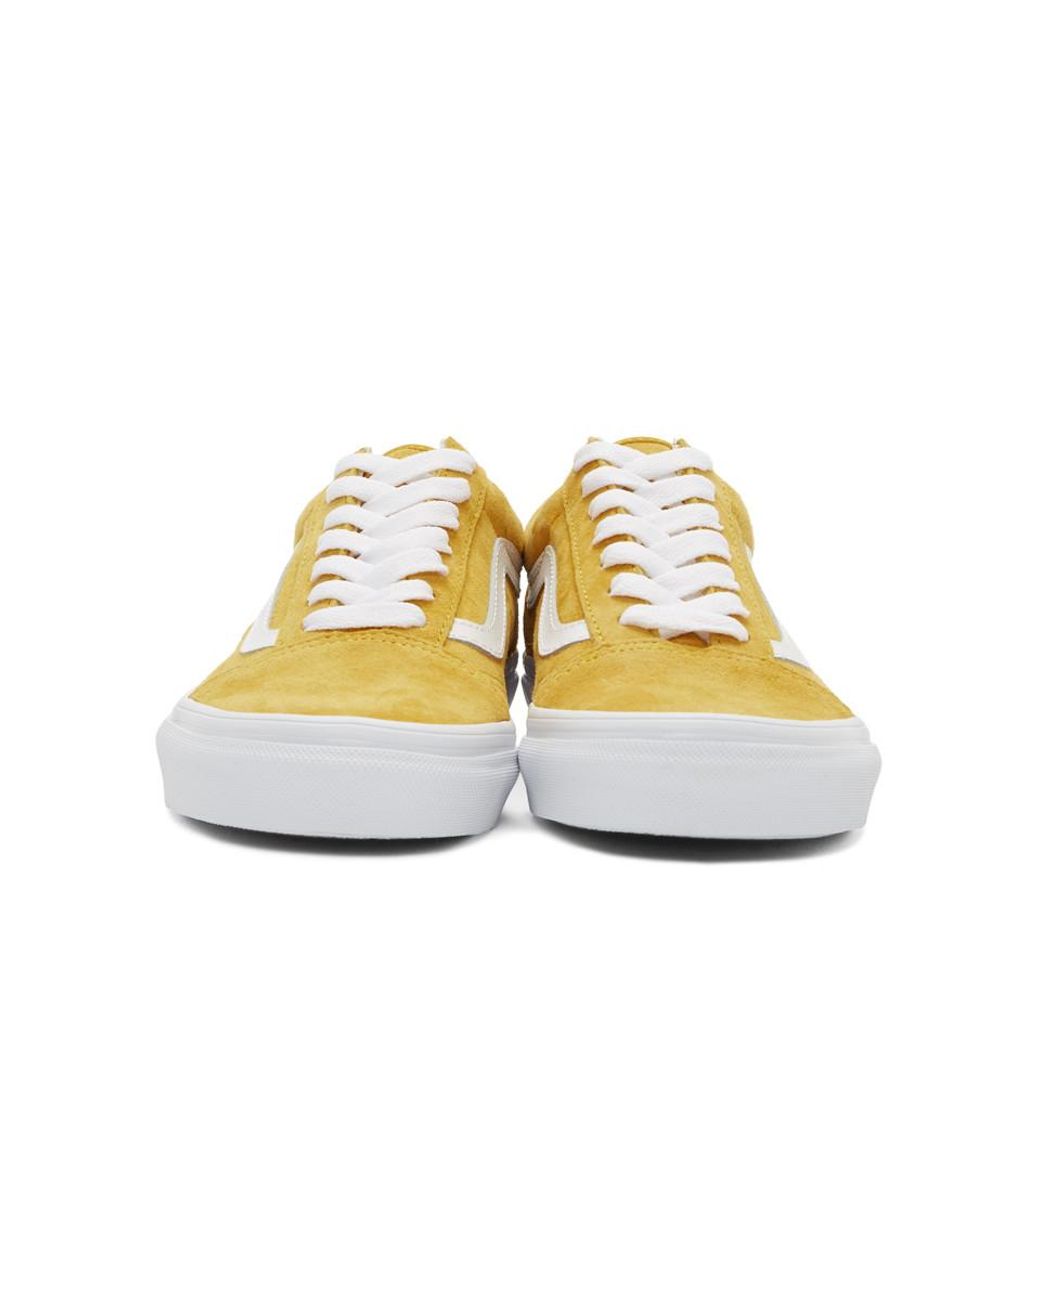 Vans Unisex Old Skool Suede Sneakers, Mango Mojito Yellow | Lyst